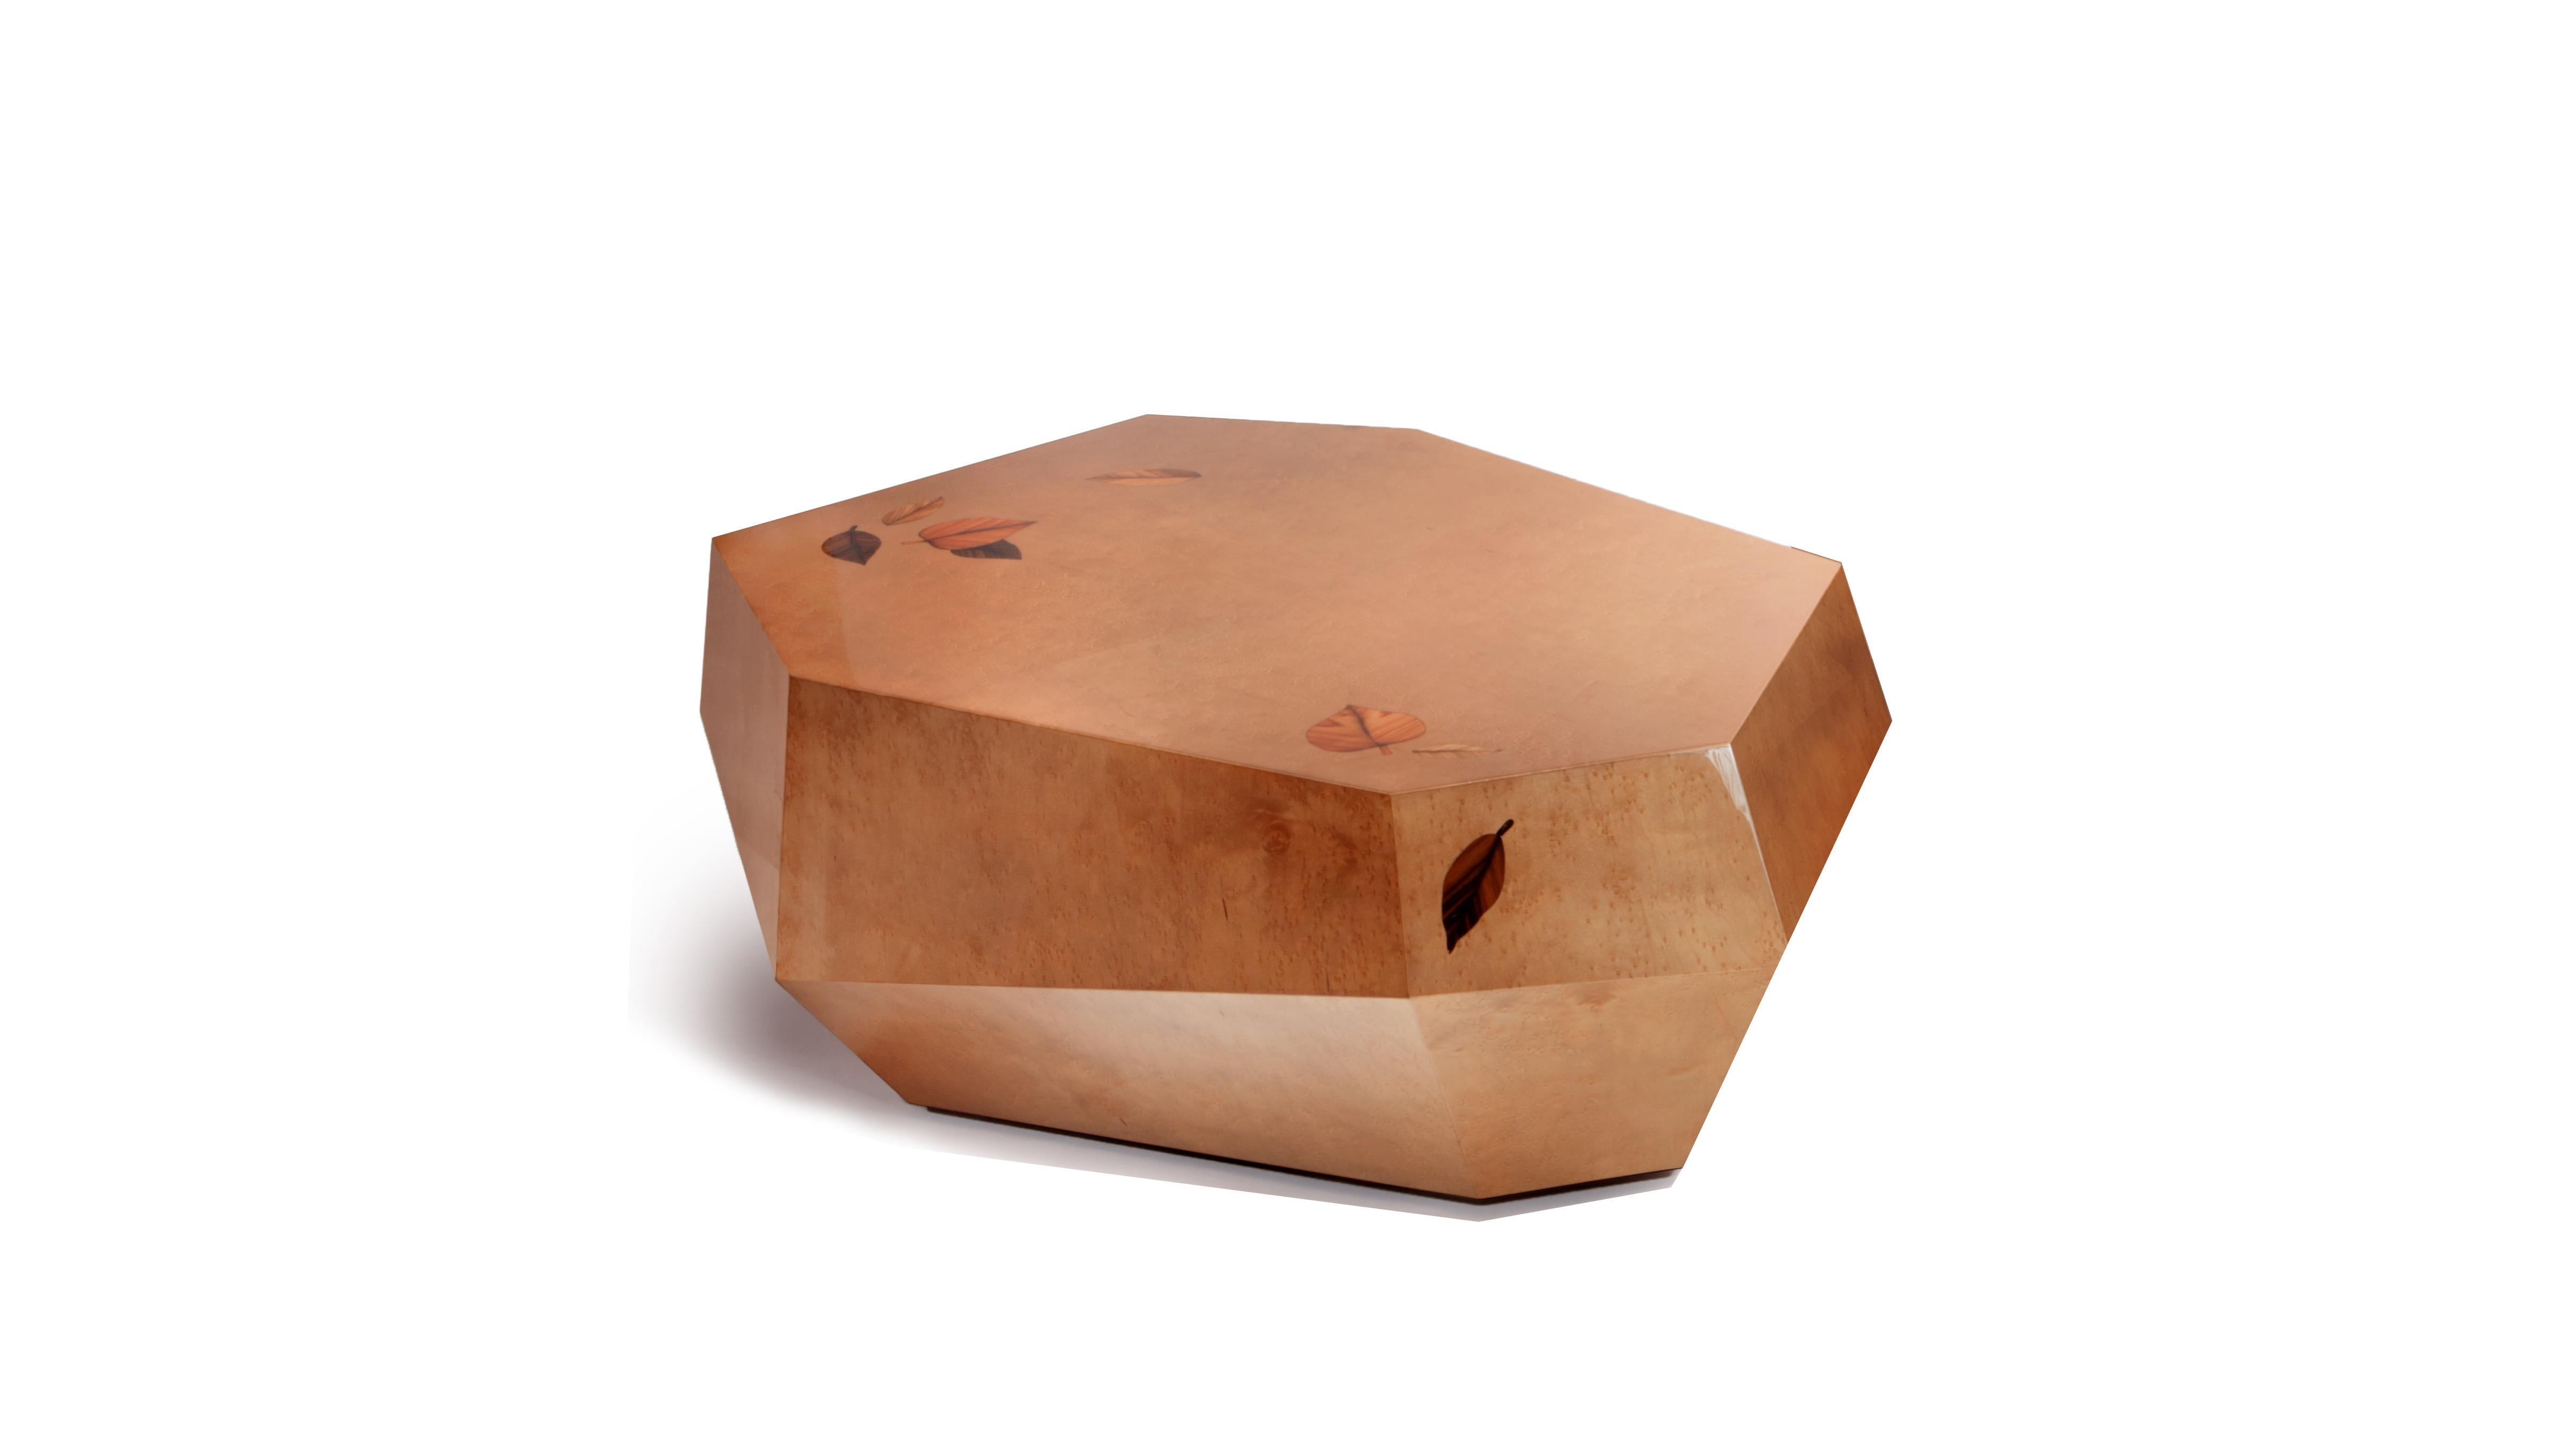 Table basse en marqueterie Three Rocks d'InsidherLand
Dimensions : D 75 x L 112 x H 37 cm.
MATERIAL : Structure en bois avec travail de marqueterie en œil d'oiseau brun fumé, placages de bois de rose, d'ébène et d'olivier en haute brillance.
19